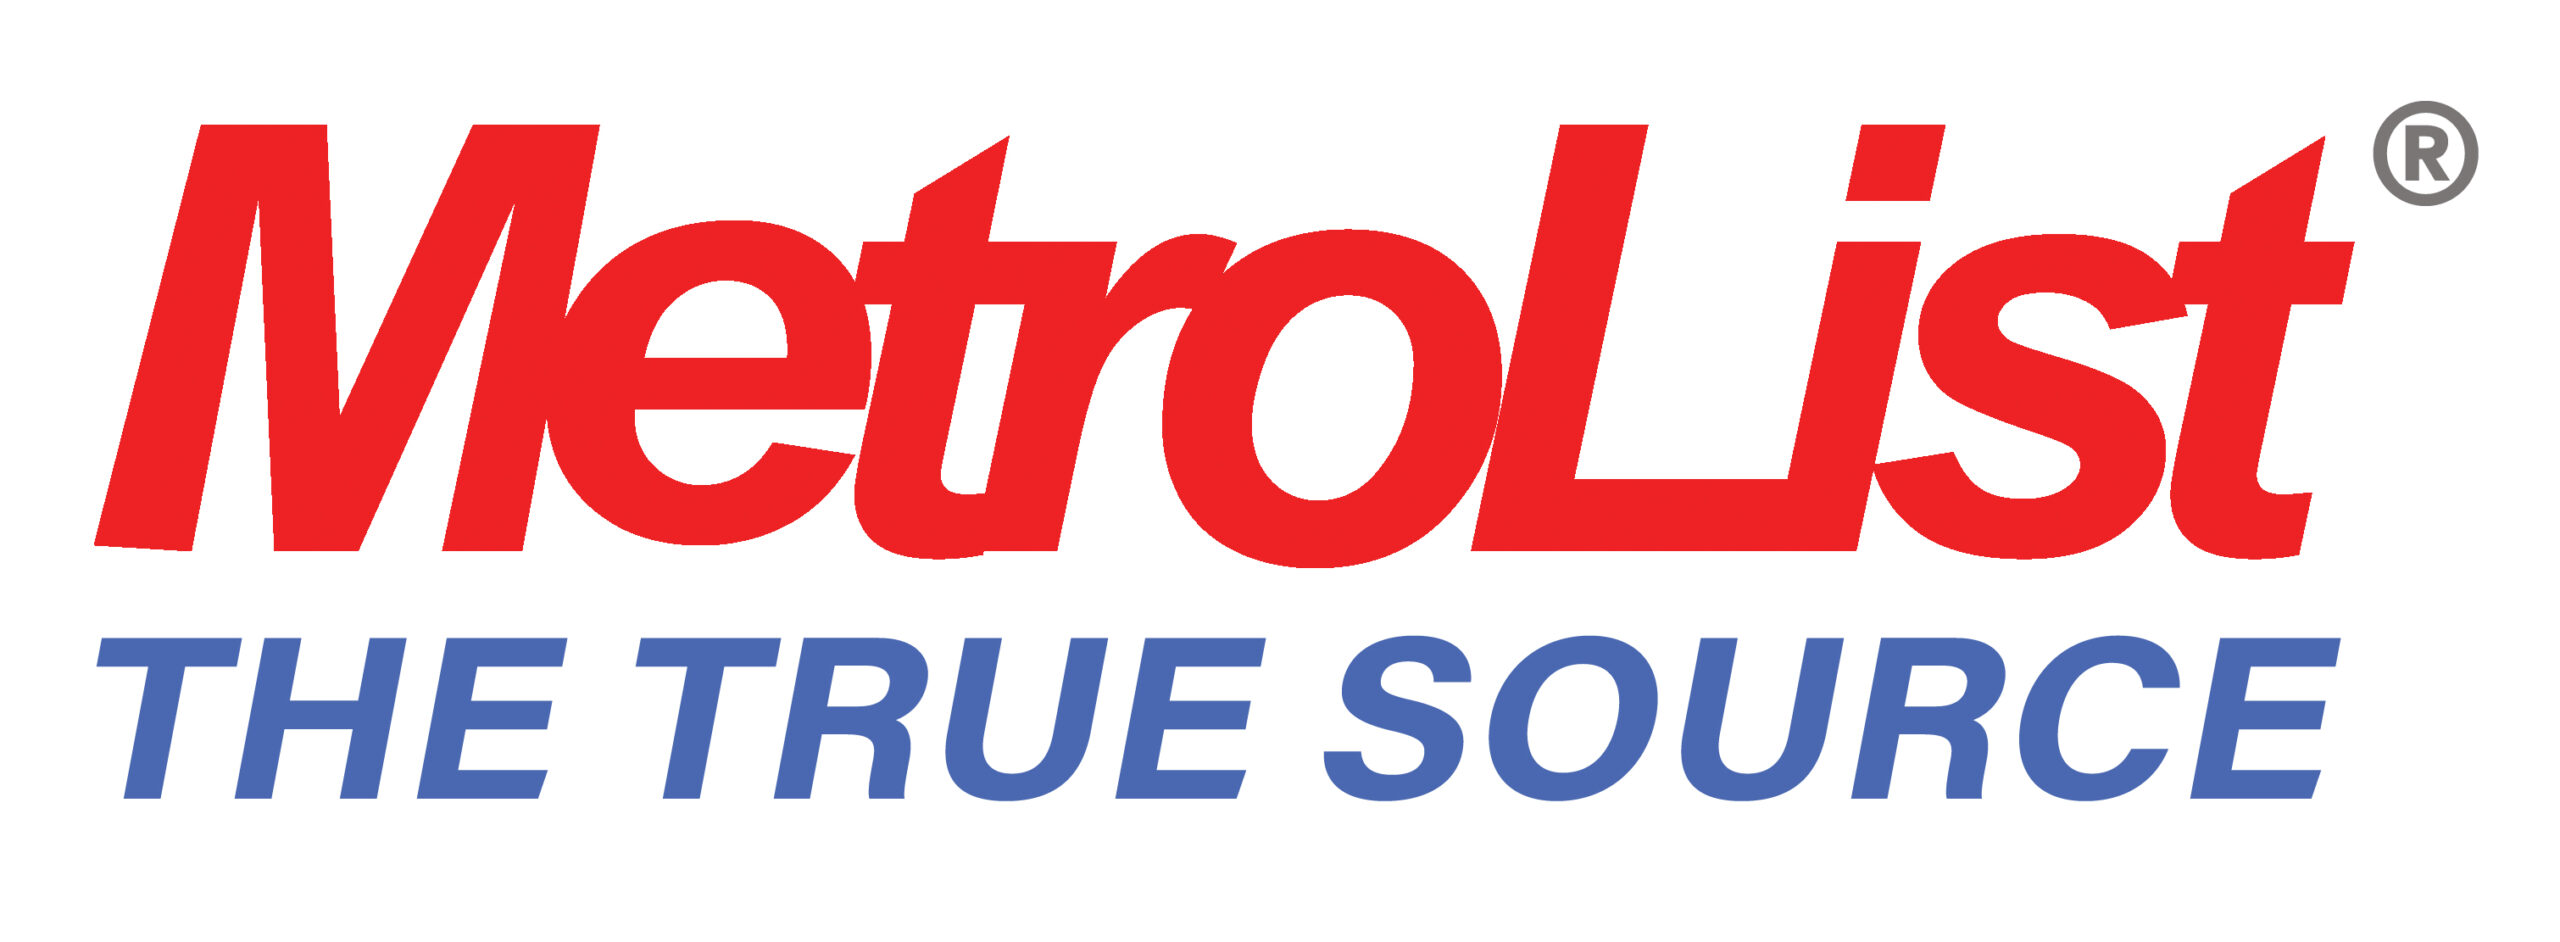 metrolist logo